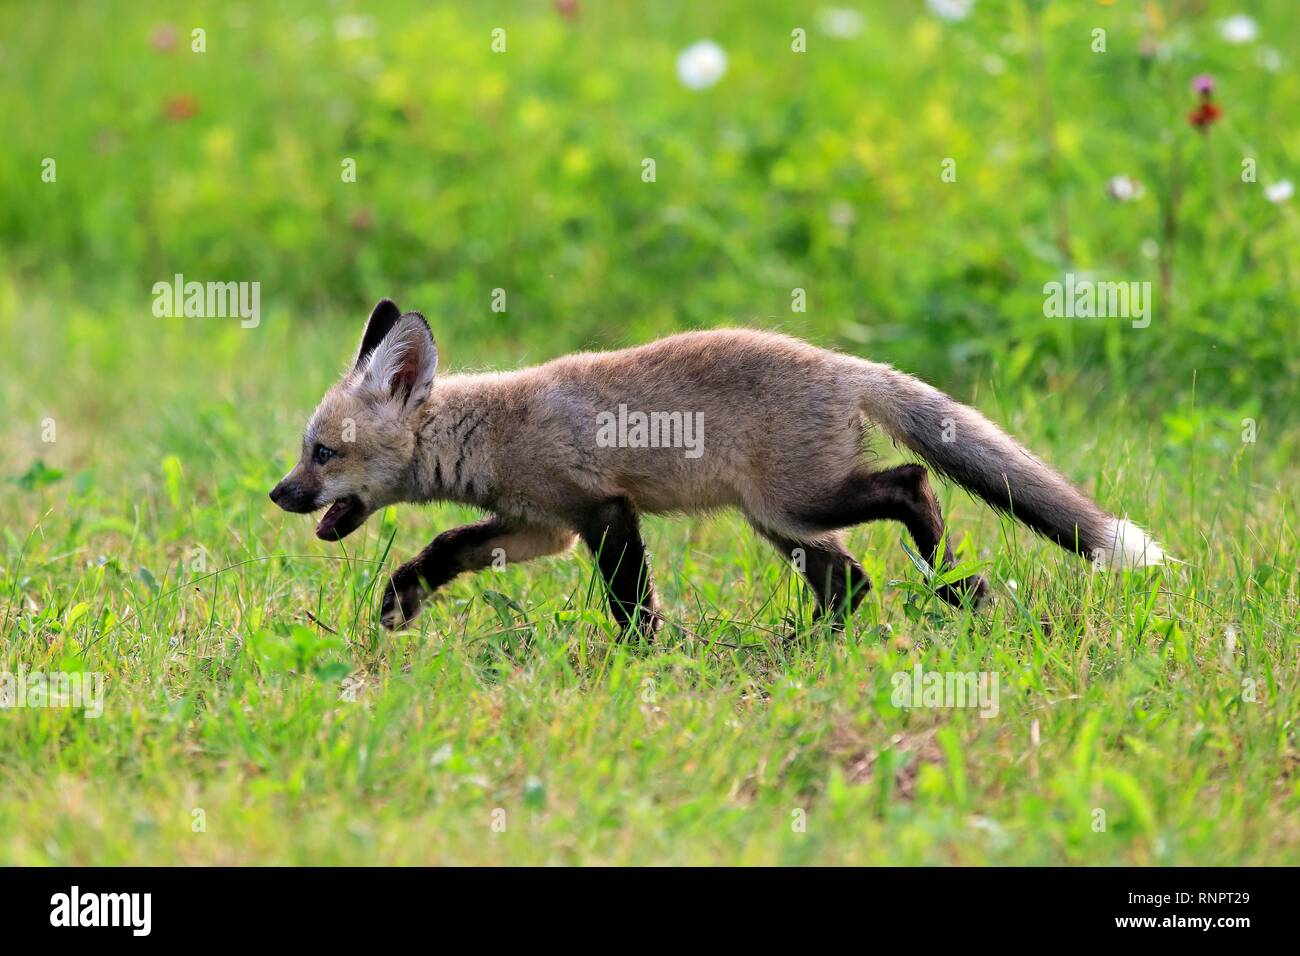 Orientale americana Red Fox (Vulpes vulpes fulvus), giovane animale in esecuzione sul prato, Contea di pino, Minnesota, Stati Uniti d'America Foto Stock